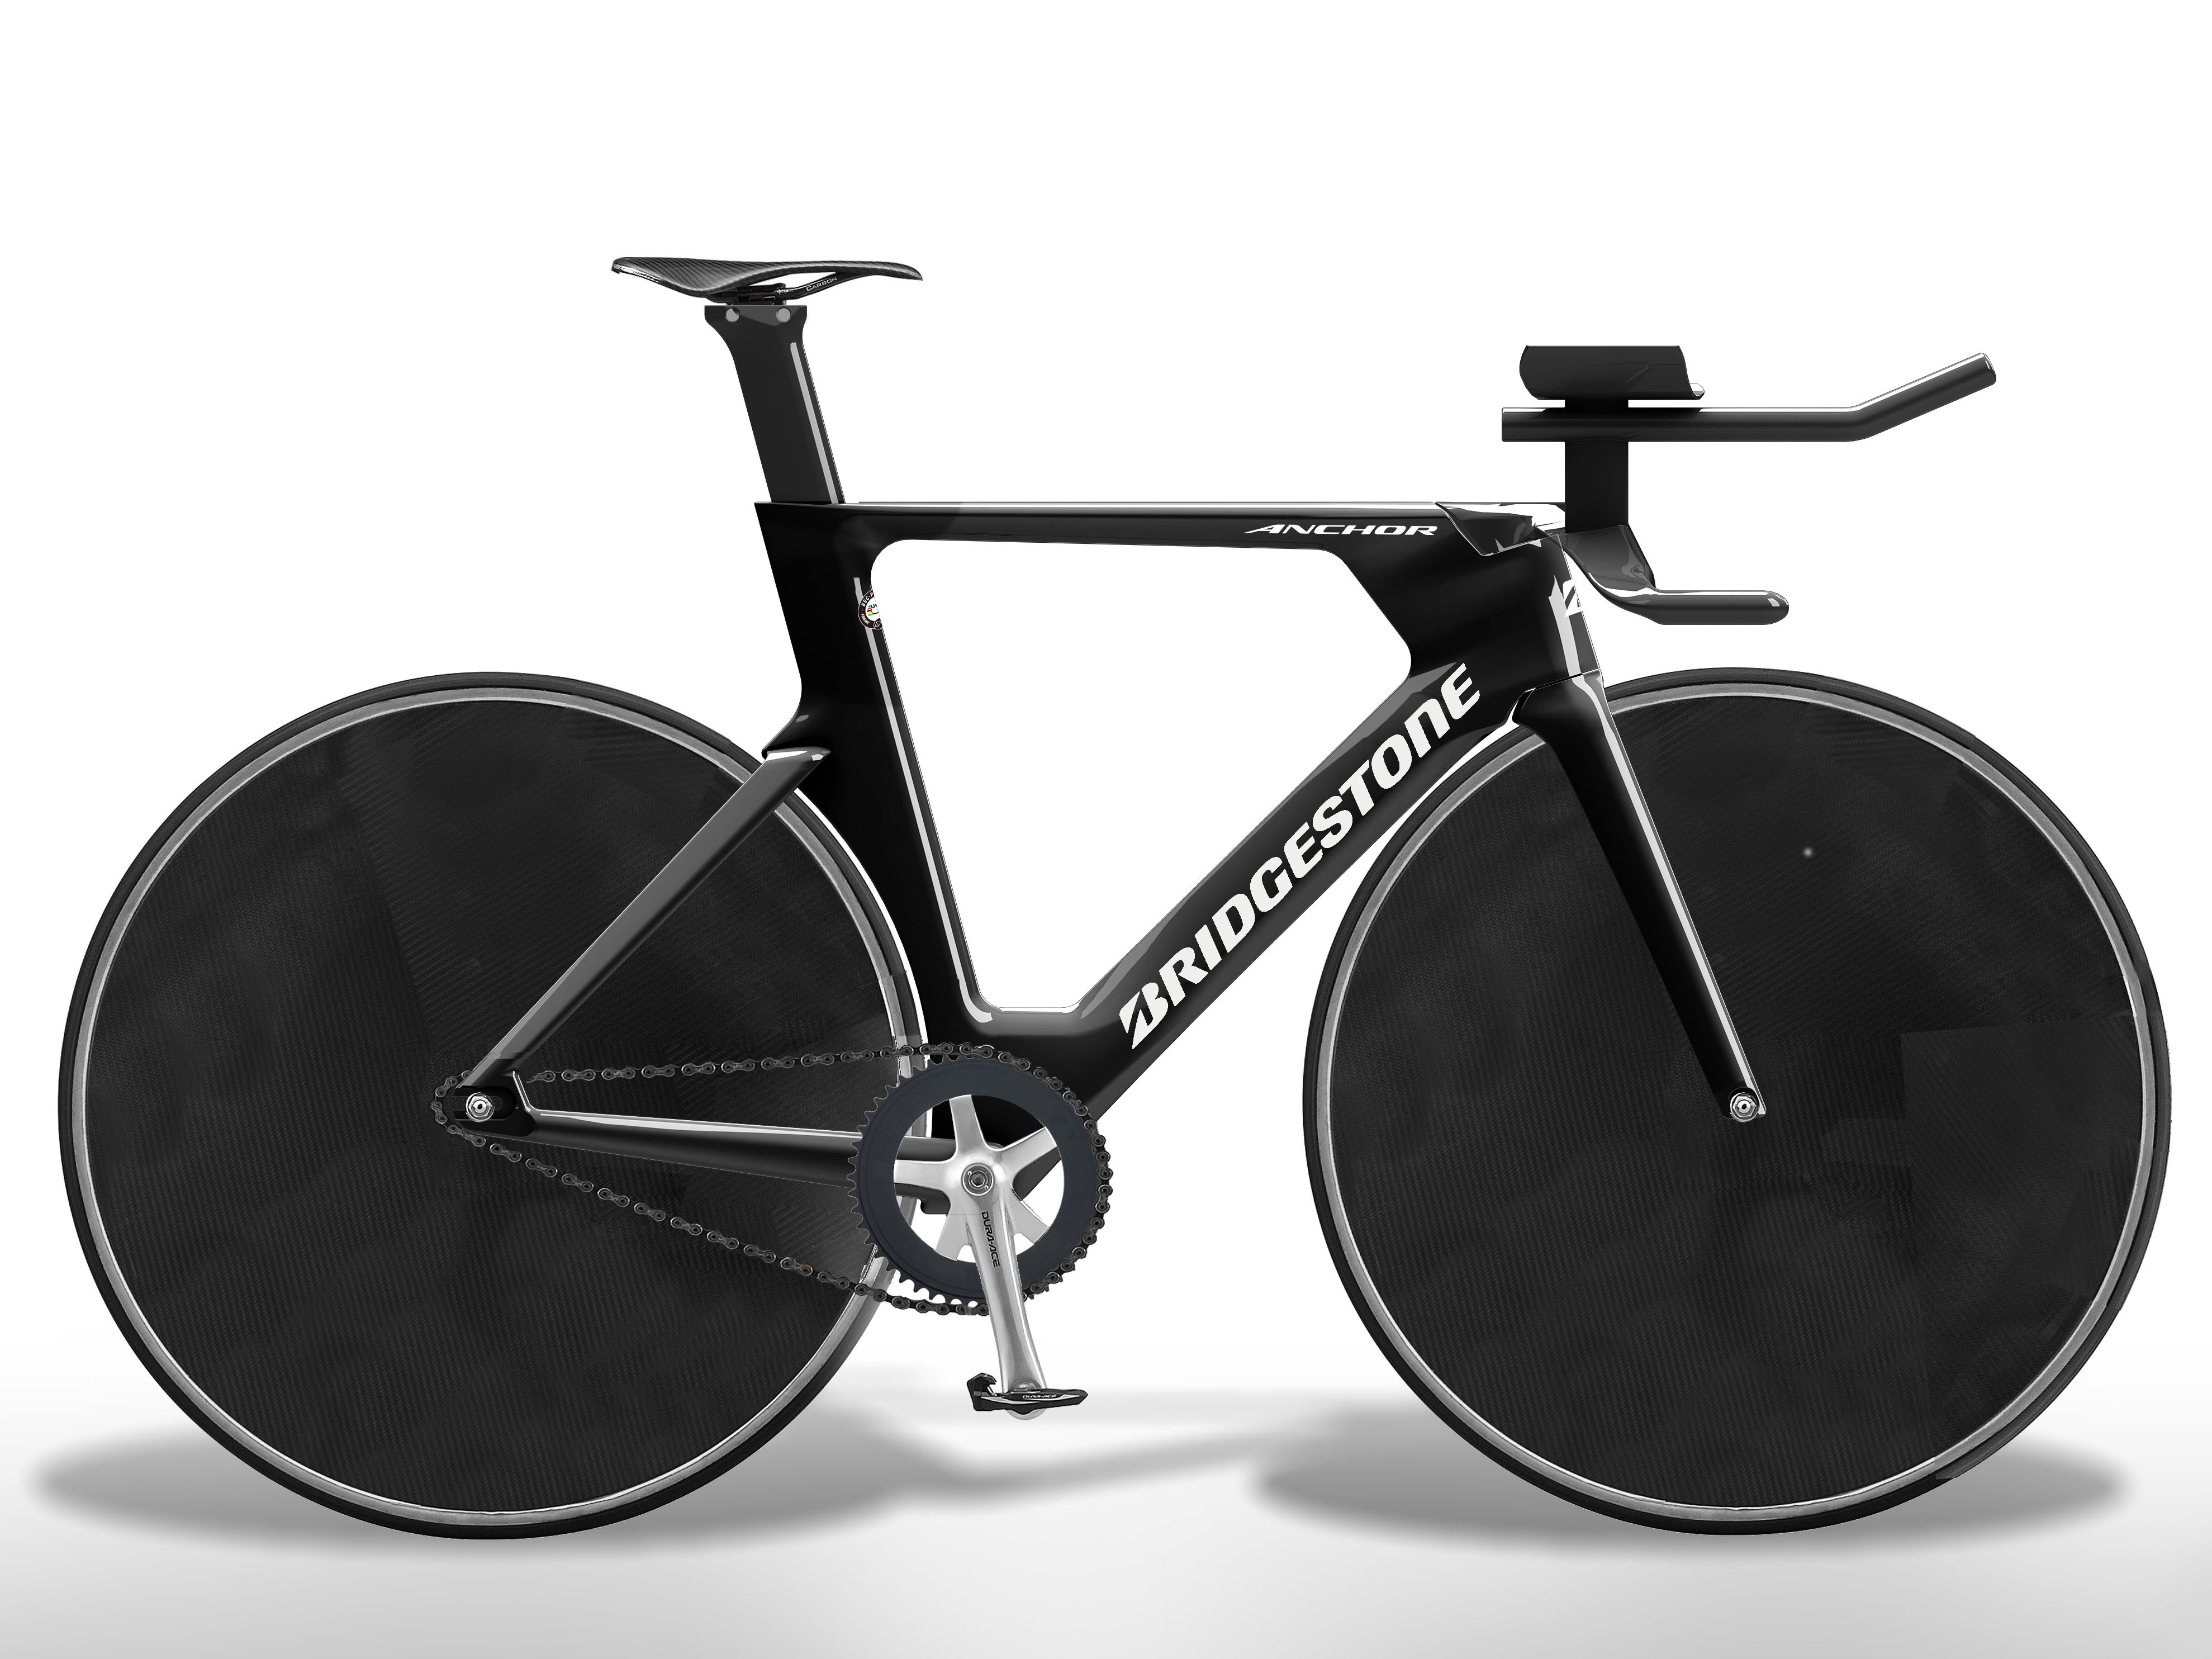 A Bridgestone desenvolveu novas bicicletas de pista que serão usadas em eventos de ciclismo pela Equipe do Japão nos Jogos Olímpicos de Tóquio 2020.